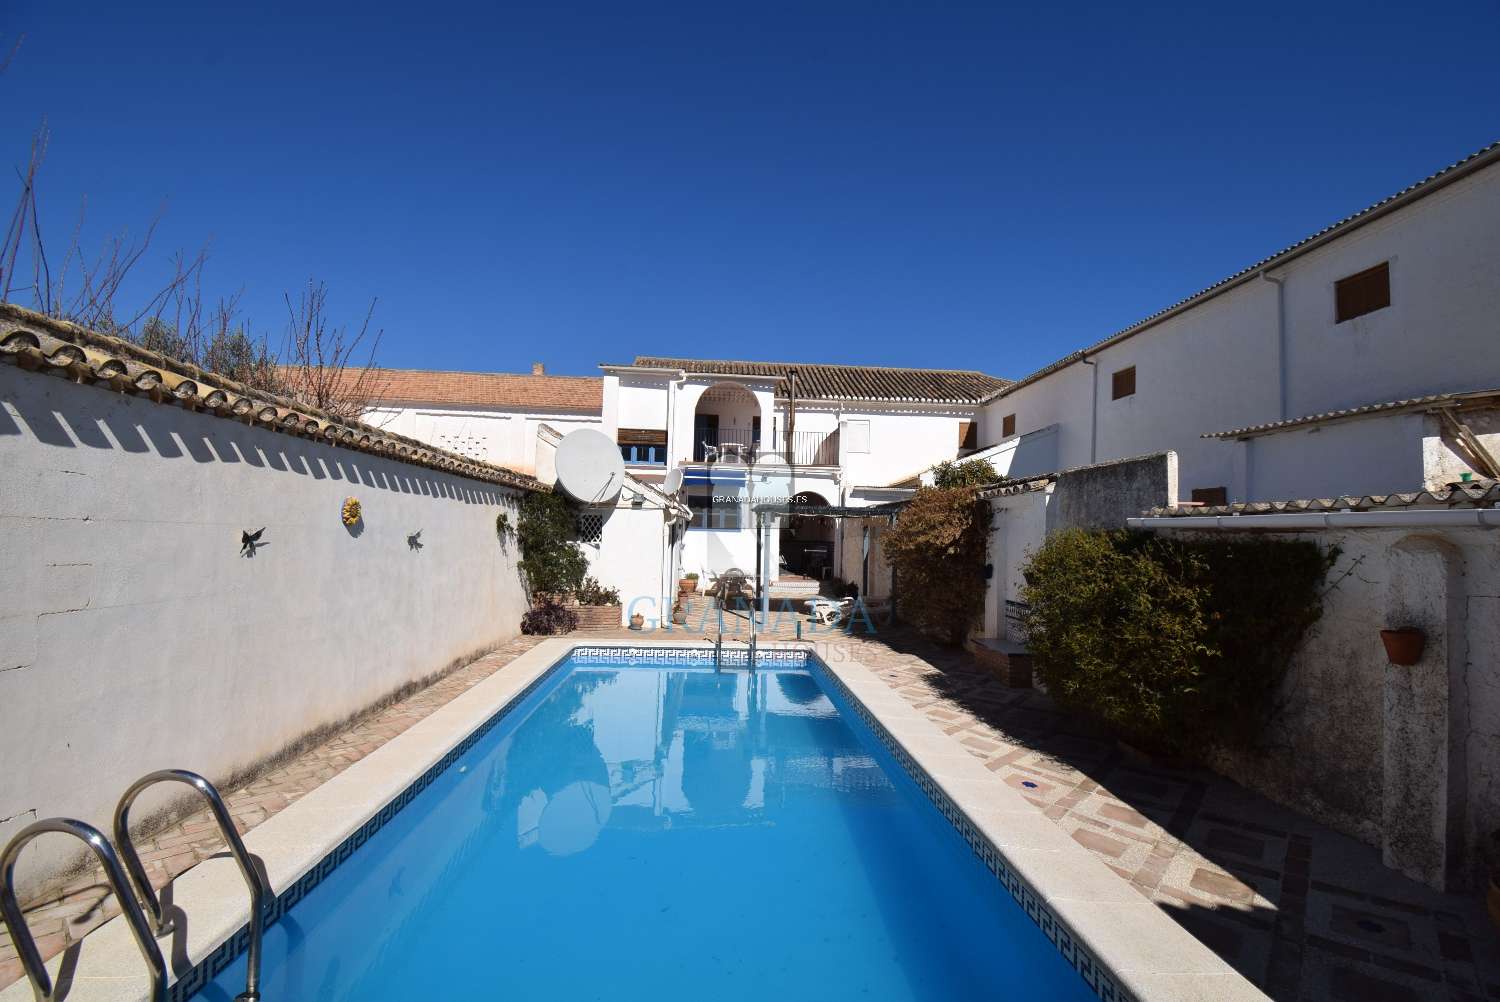 Schönes andalusisches Haus mit großer Terrasse und Pool